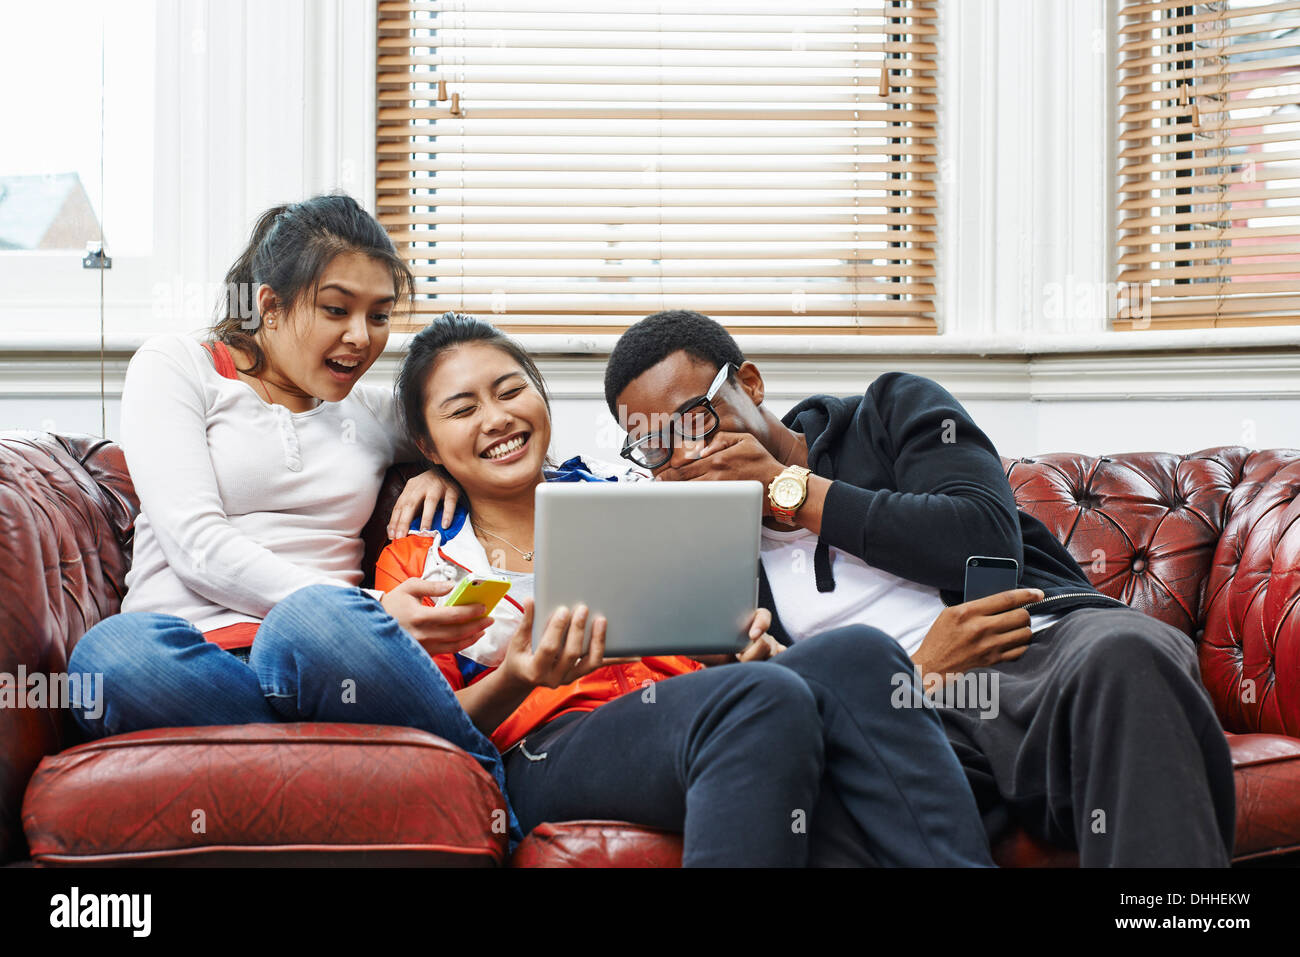 Tre giovani adulti seduti sul divano a ridere a tavoletta digitale Foto Stock